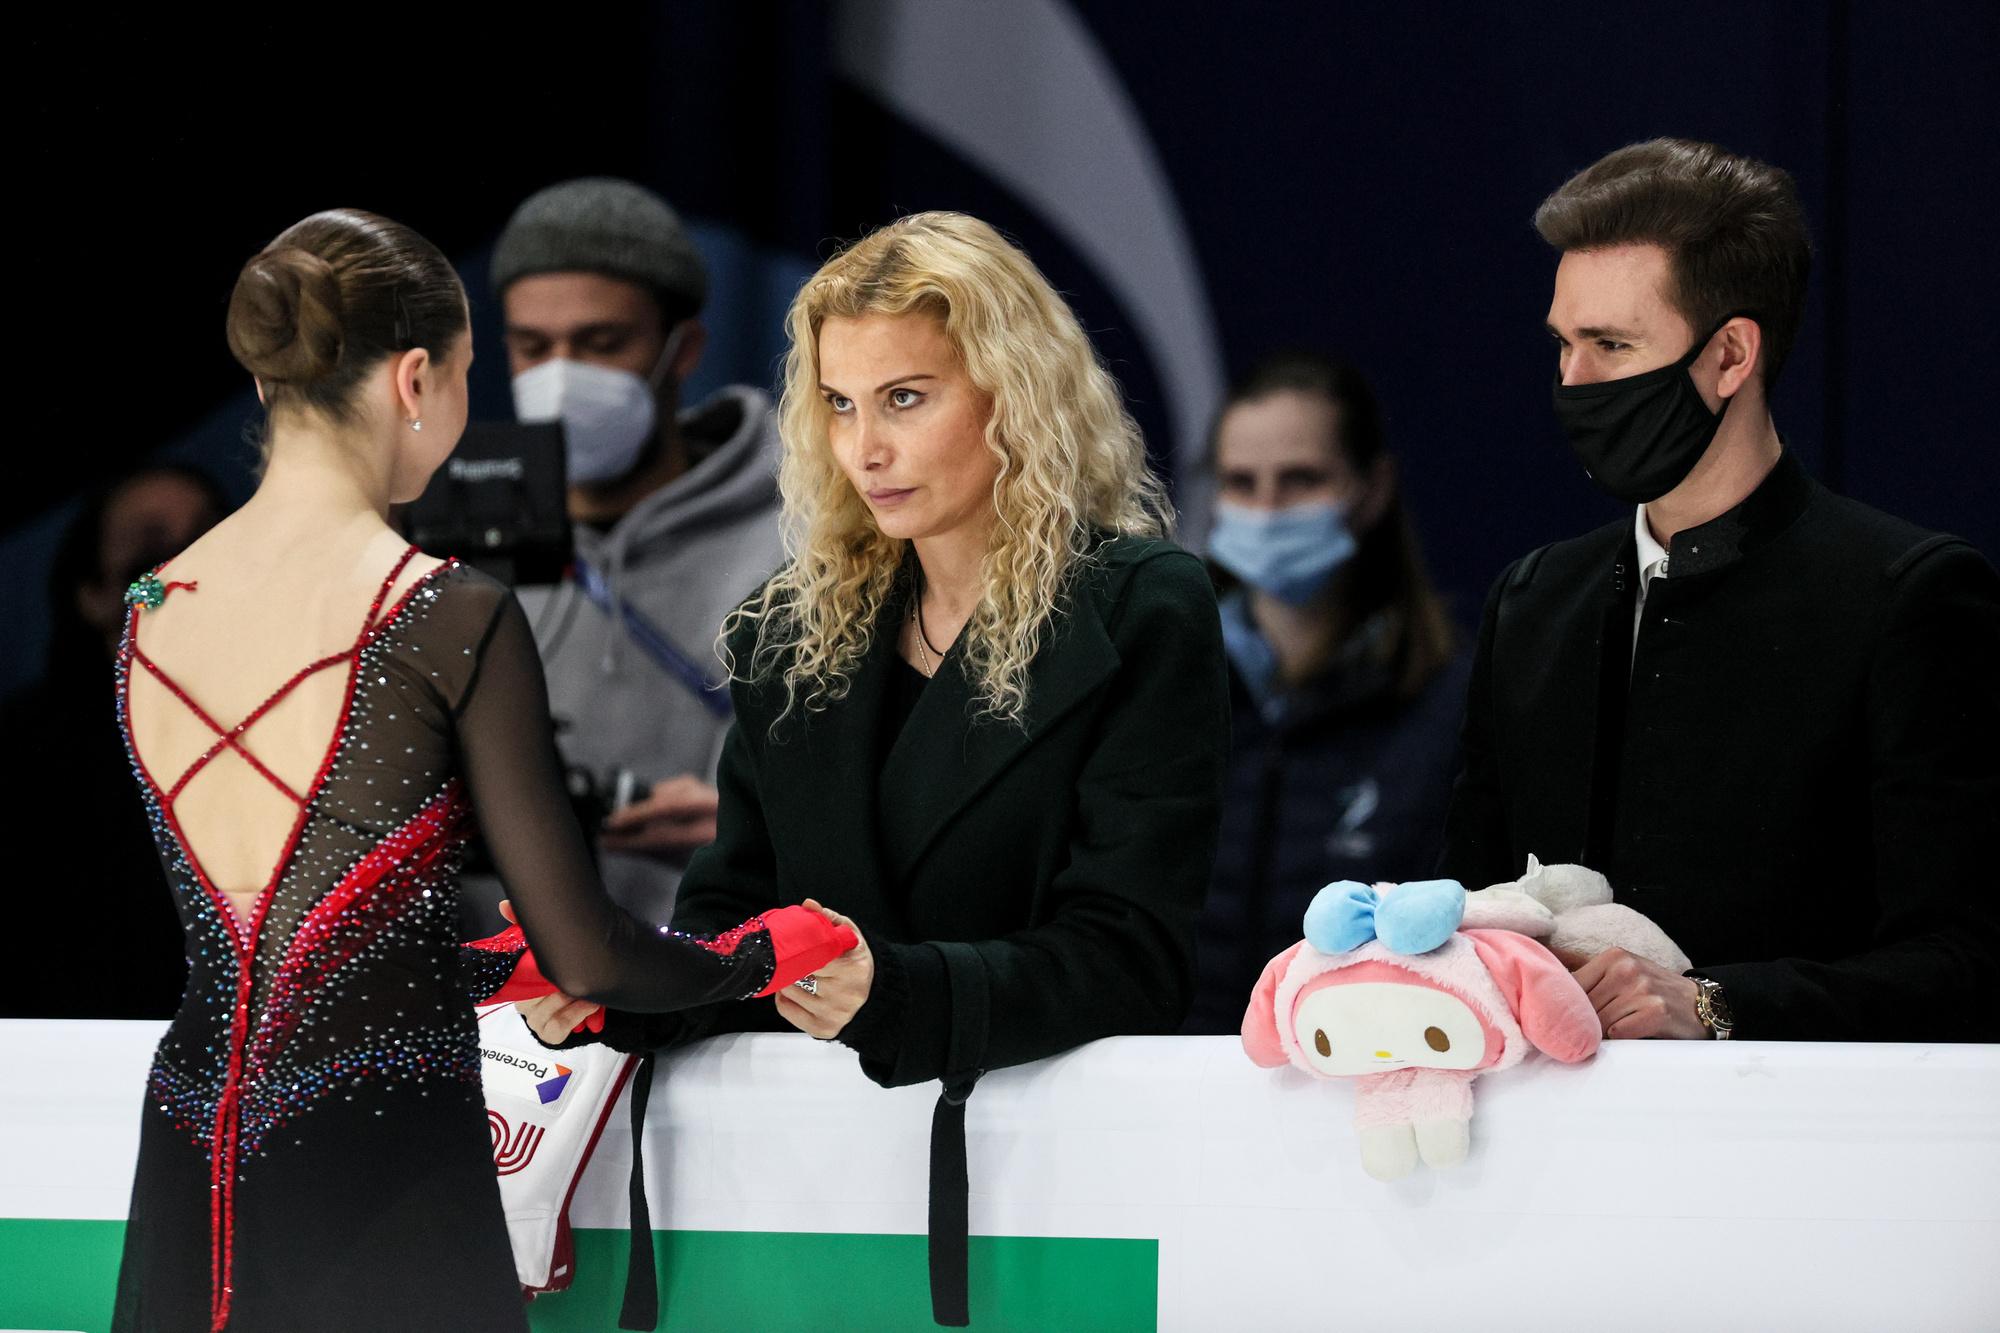 Kamila Valieva en compagnie de sa coach Eteri Tutberidze, éleveuse de championnes et de champions dans le patinage artistique russe.